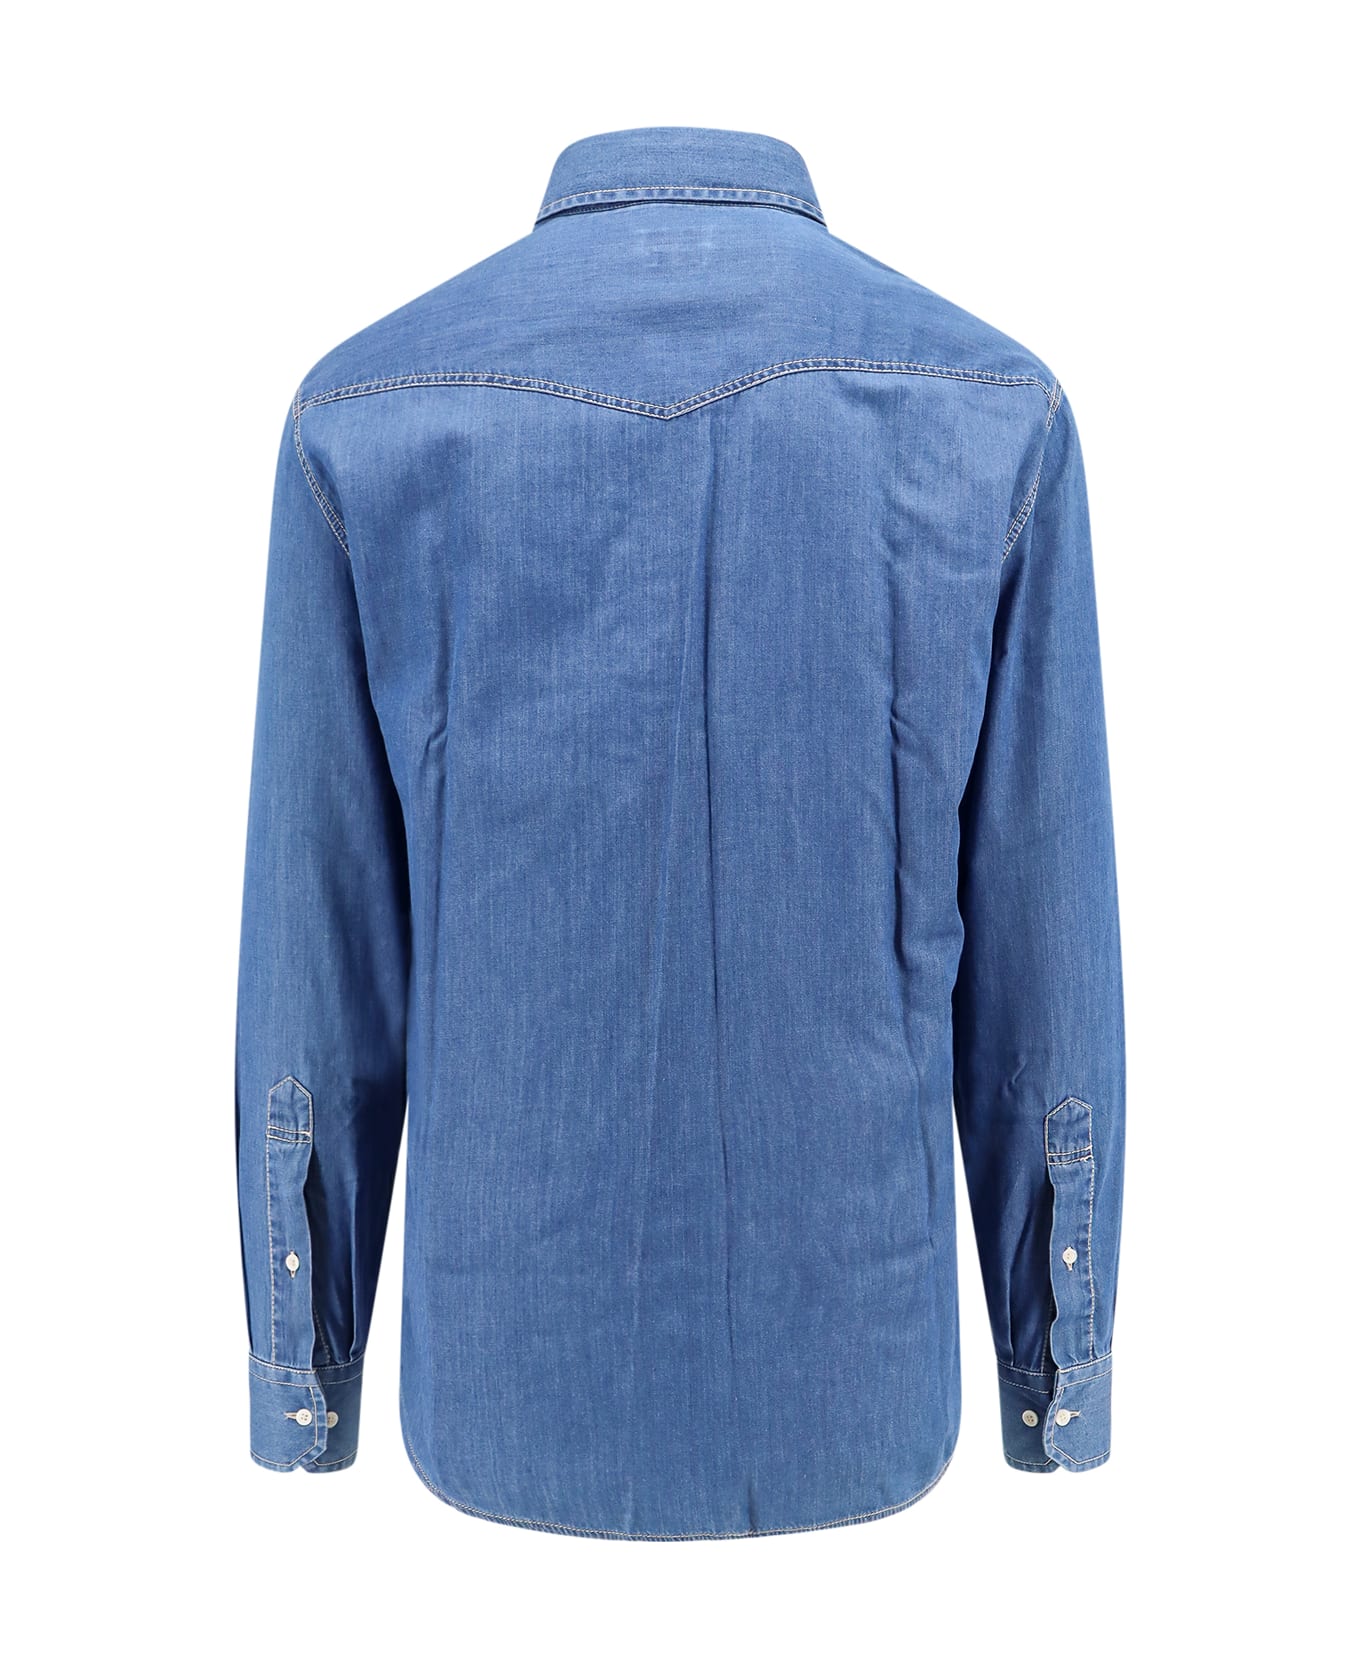 Brunello Cucinelli Shirt - Blue シャツ